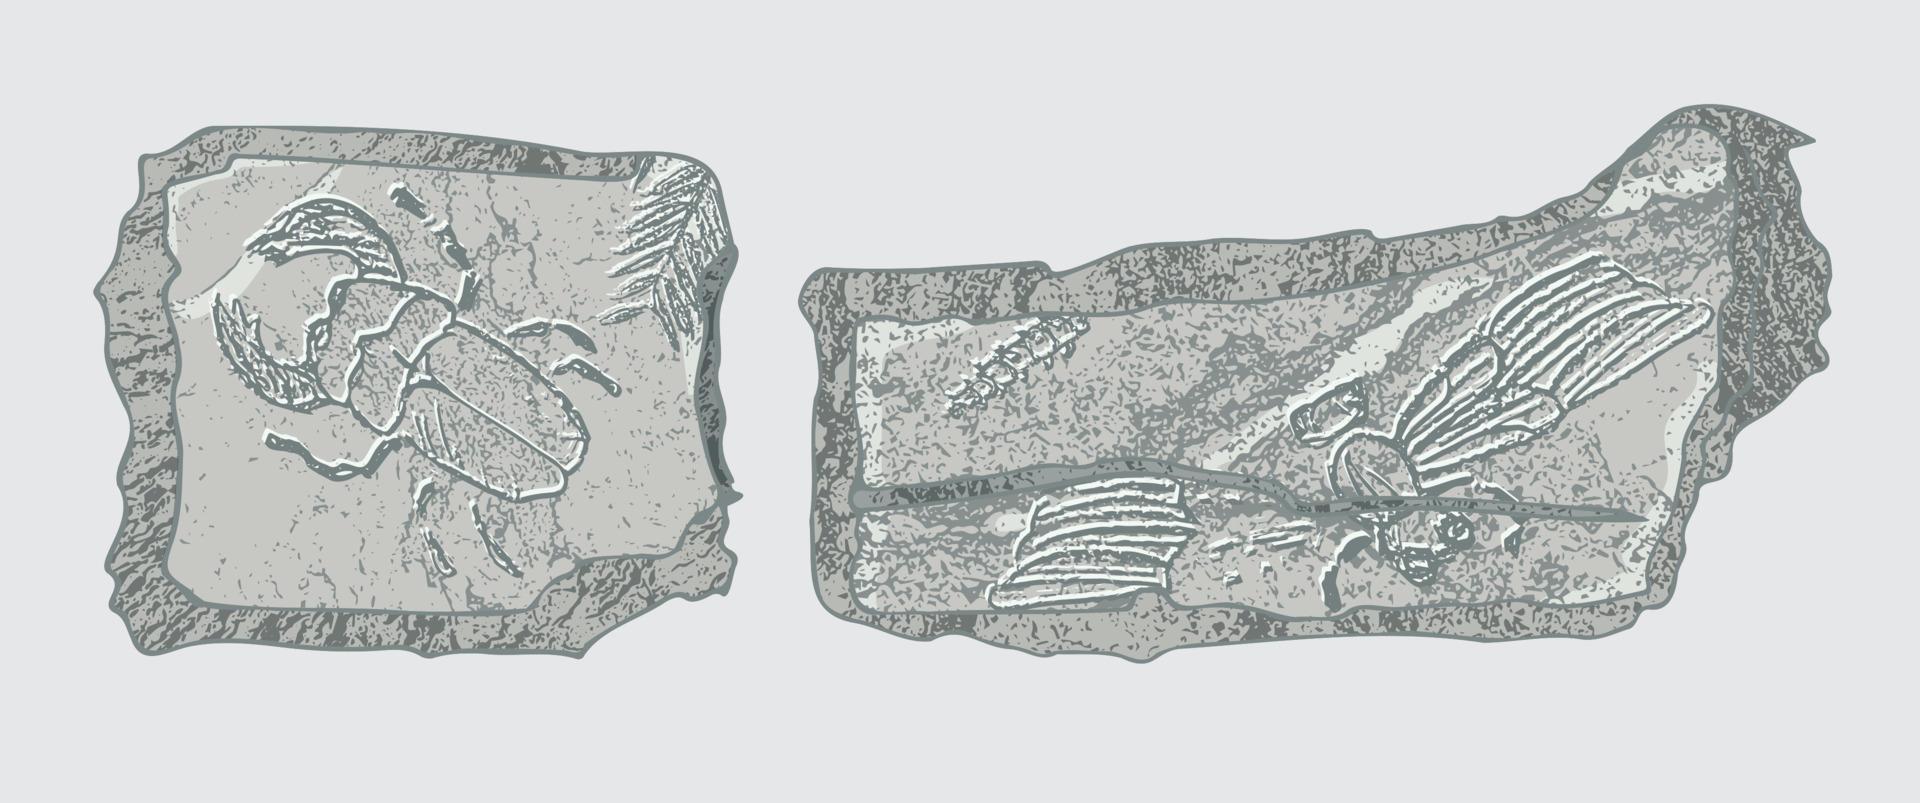 Stein mit Abdrücken von Skeletten prähistorischer Tiere, Insekten und Pflanzen. graue archäologie, bruchgesteinsfragmente, schuttbrocken. satz realistischer handgezeichneter kunst. Vektor-Illustration vektor